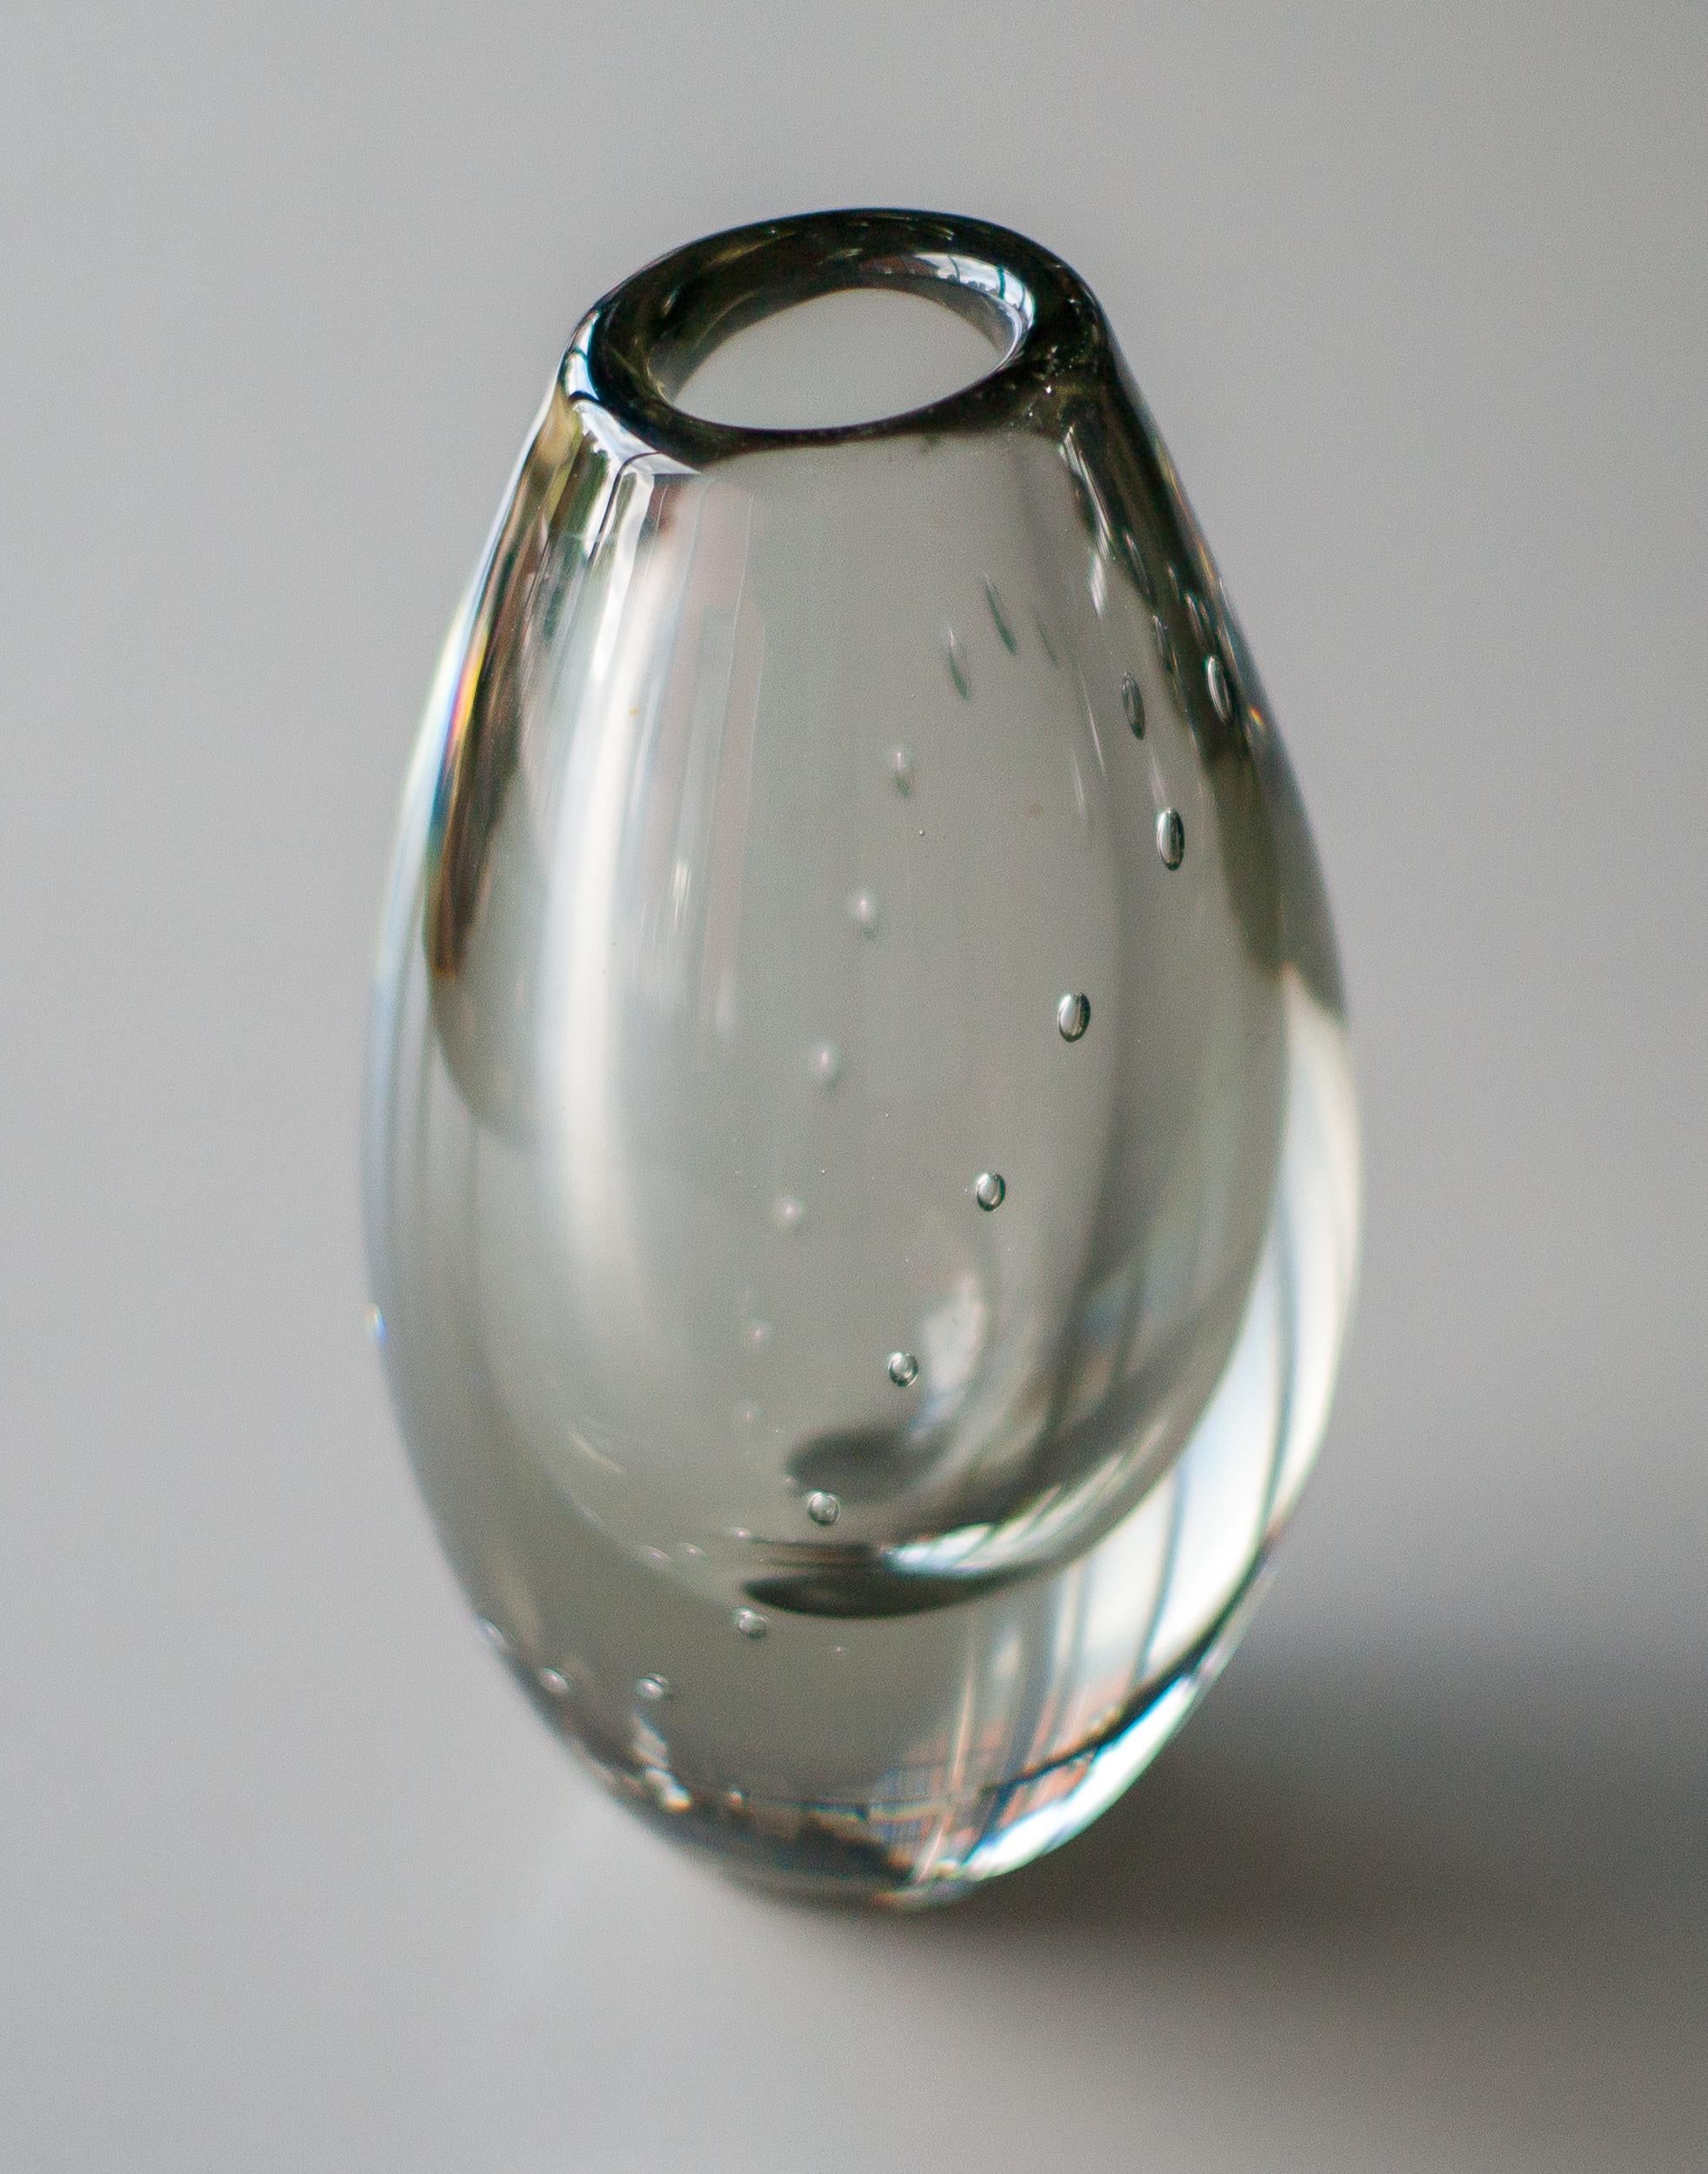 Seltene Vase mit Perlenkette, entworfen von Gunnel Nyman für Nuutajärv, Finnland.
Provenienz: Die Sammlung des ehemaligen finnischen Honorargeneralkonsuls in den Niederlanden.
 
Gunnel Nyman war ein renommierter finnischer Glaskünstler, dessen